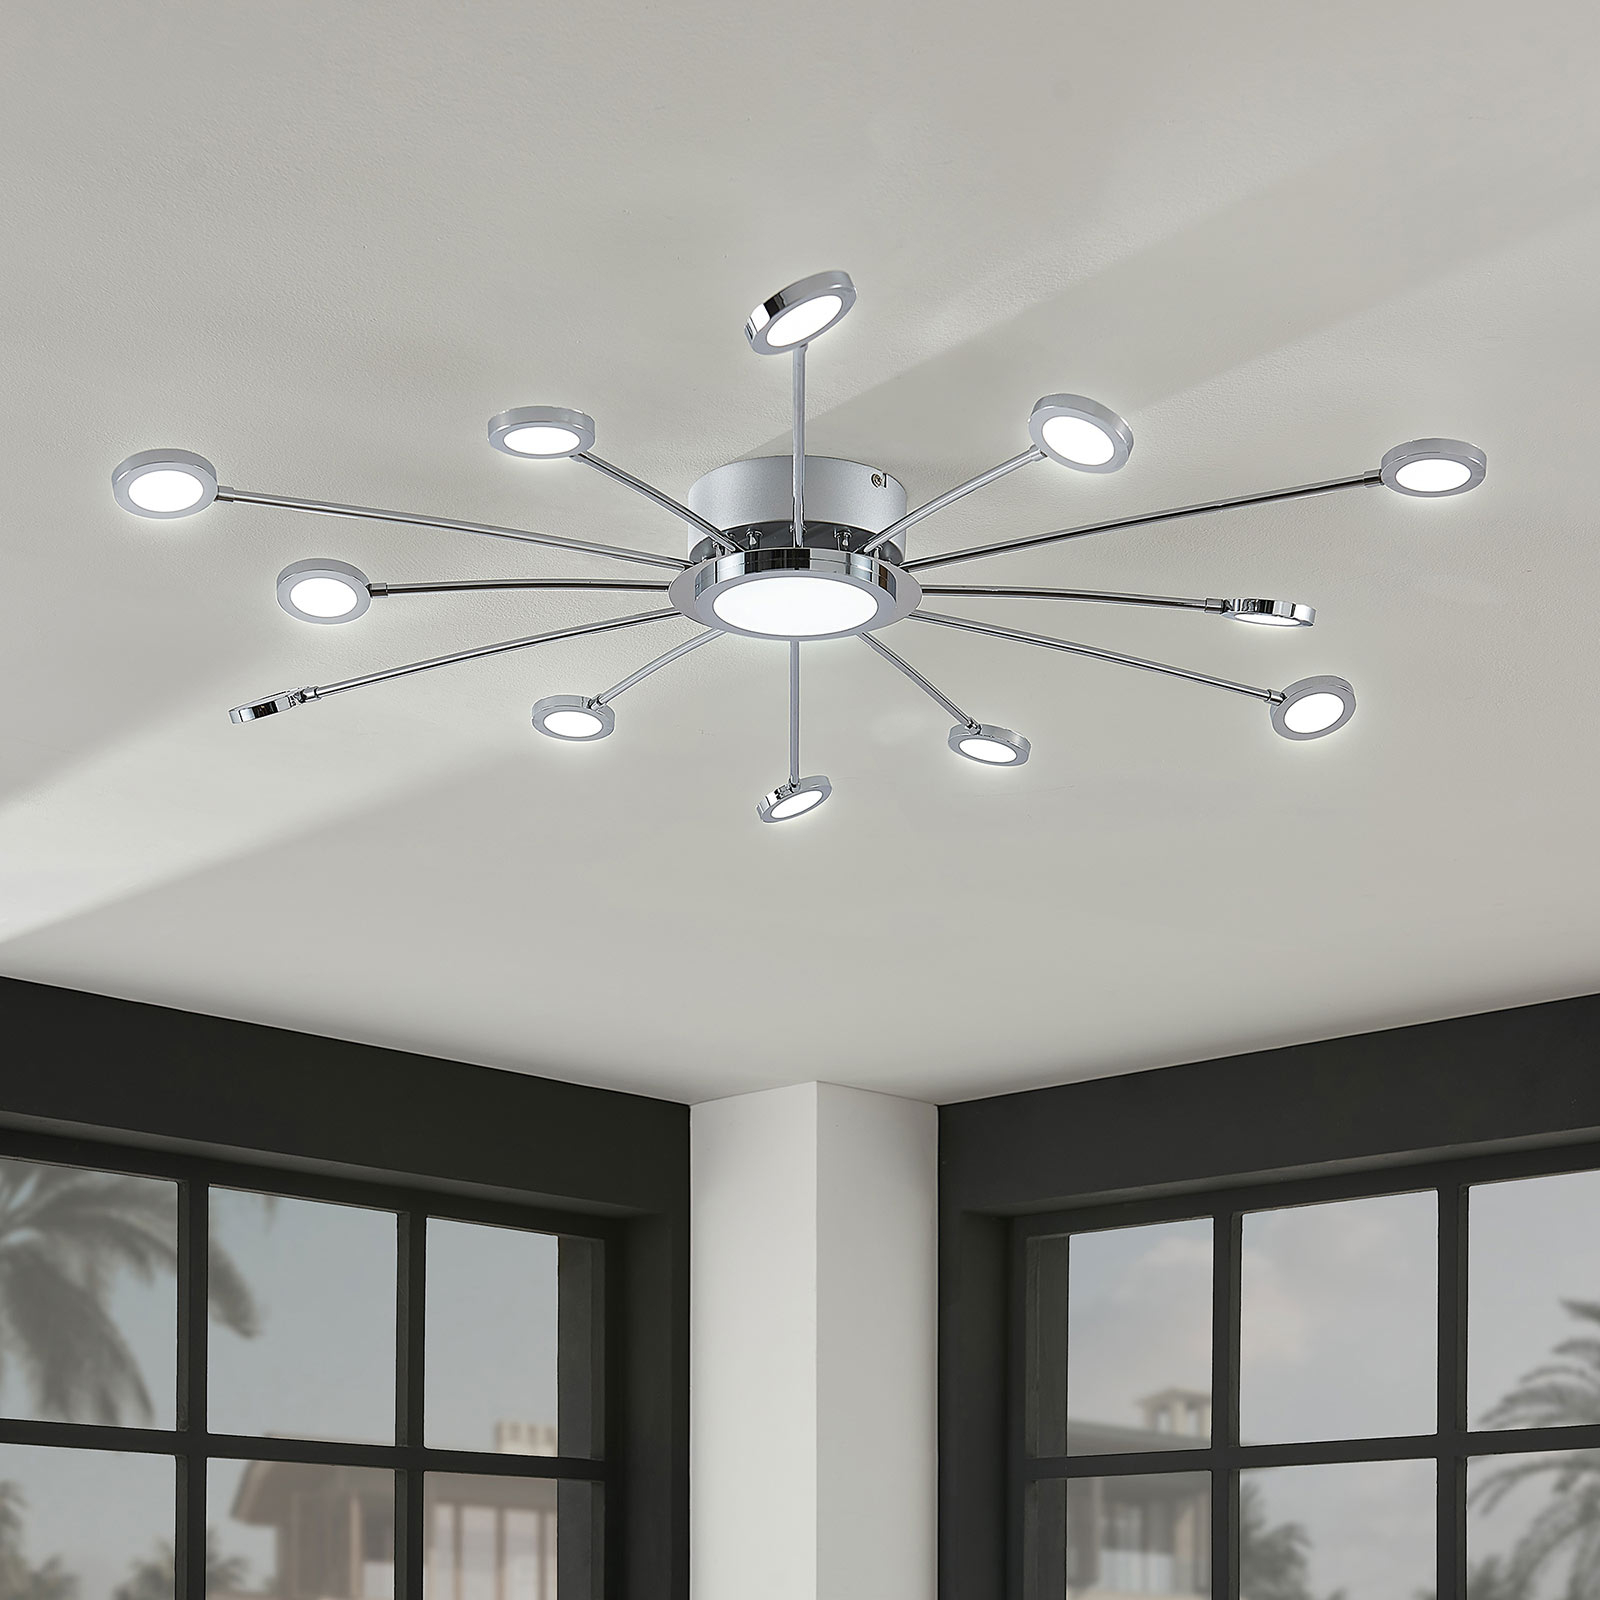 dealer jukbeen Typisch Grote led plafondlamp Meru met afstandsbediening | Lampen24.be